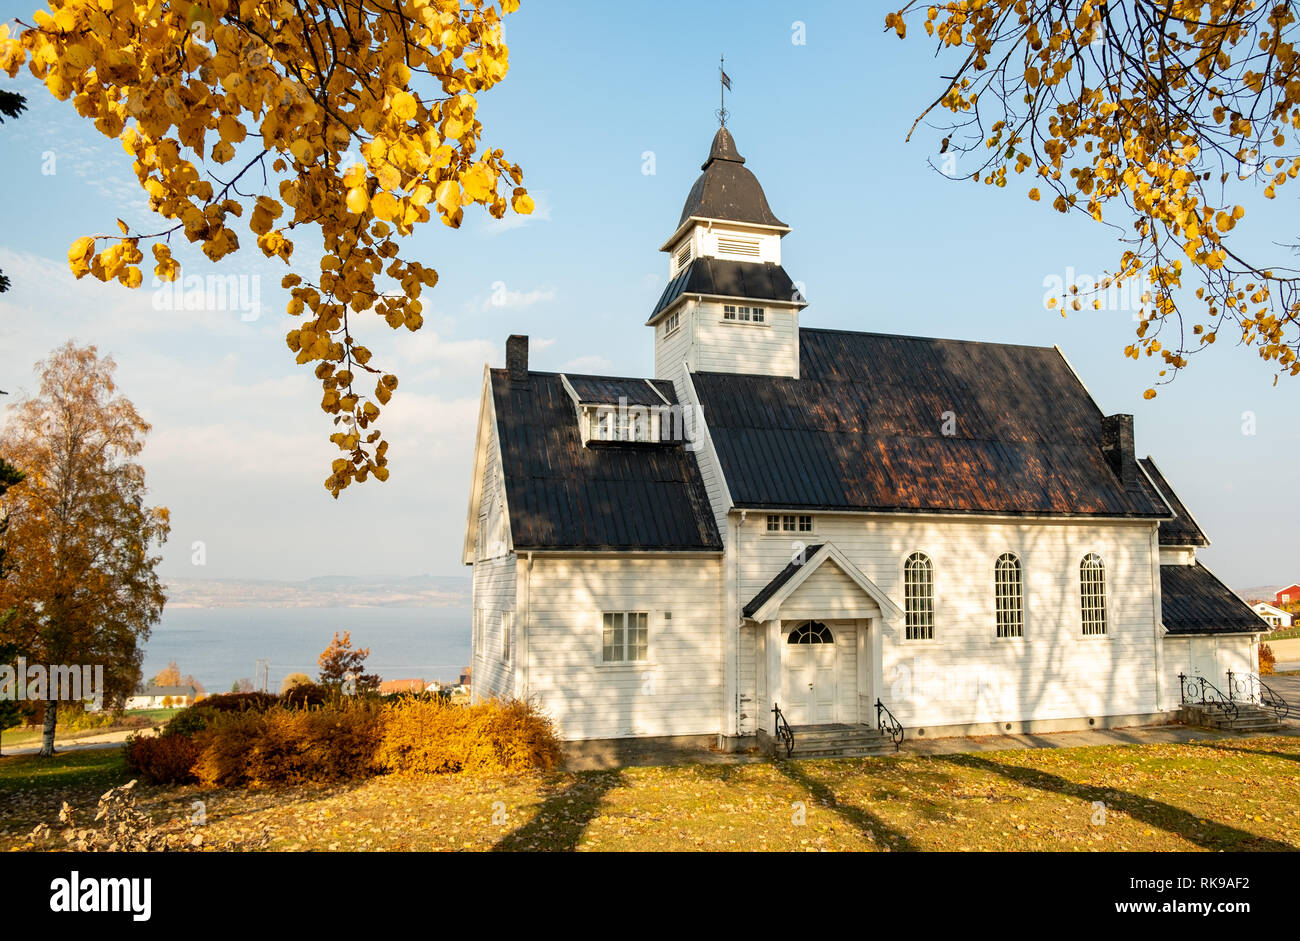 La pequeña iglesia de madera blanca tradicional en Kapp, Noruega con hojas de otoño Foto de stock